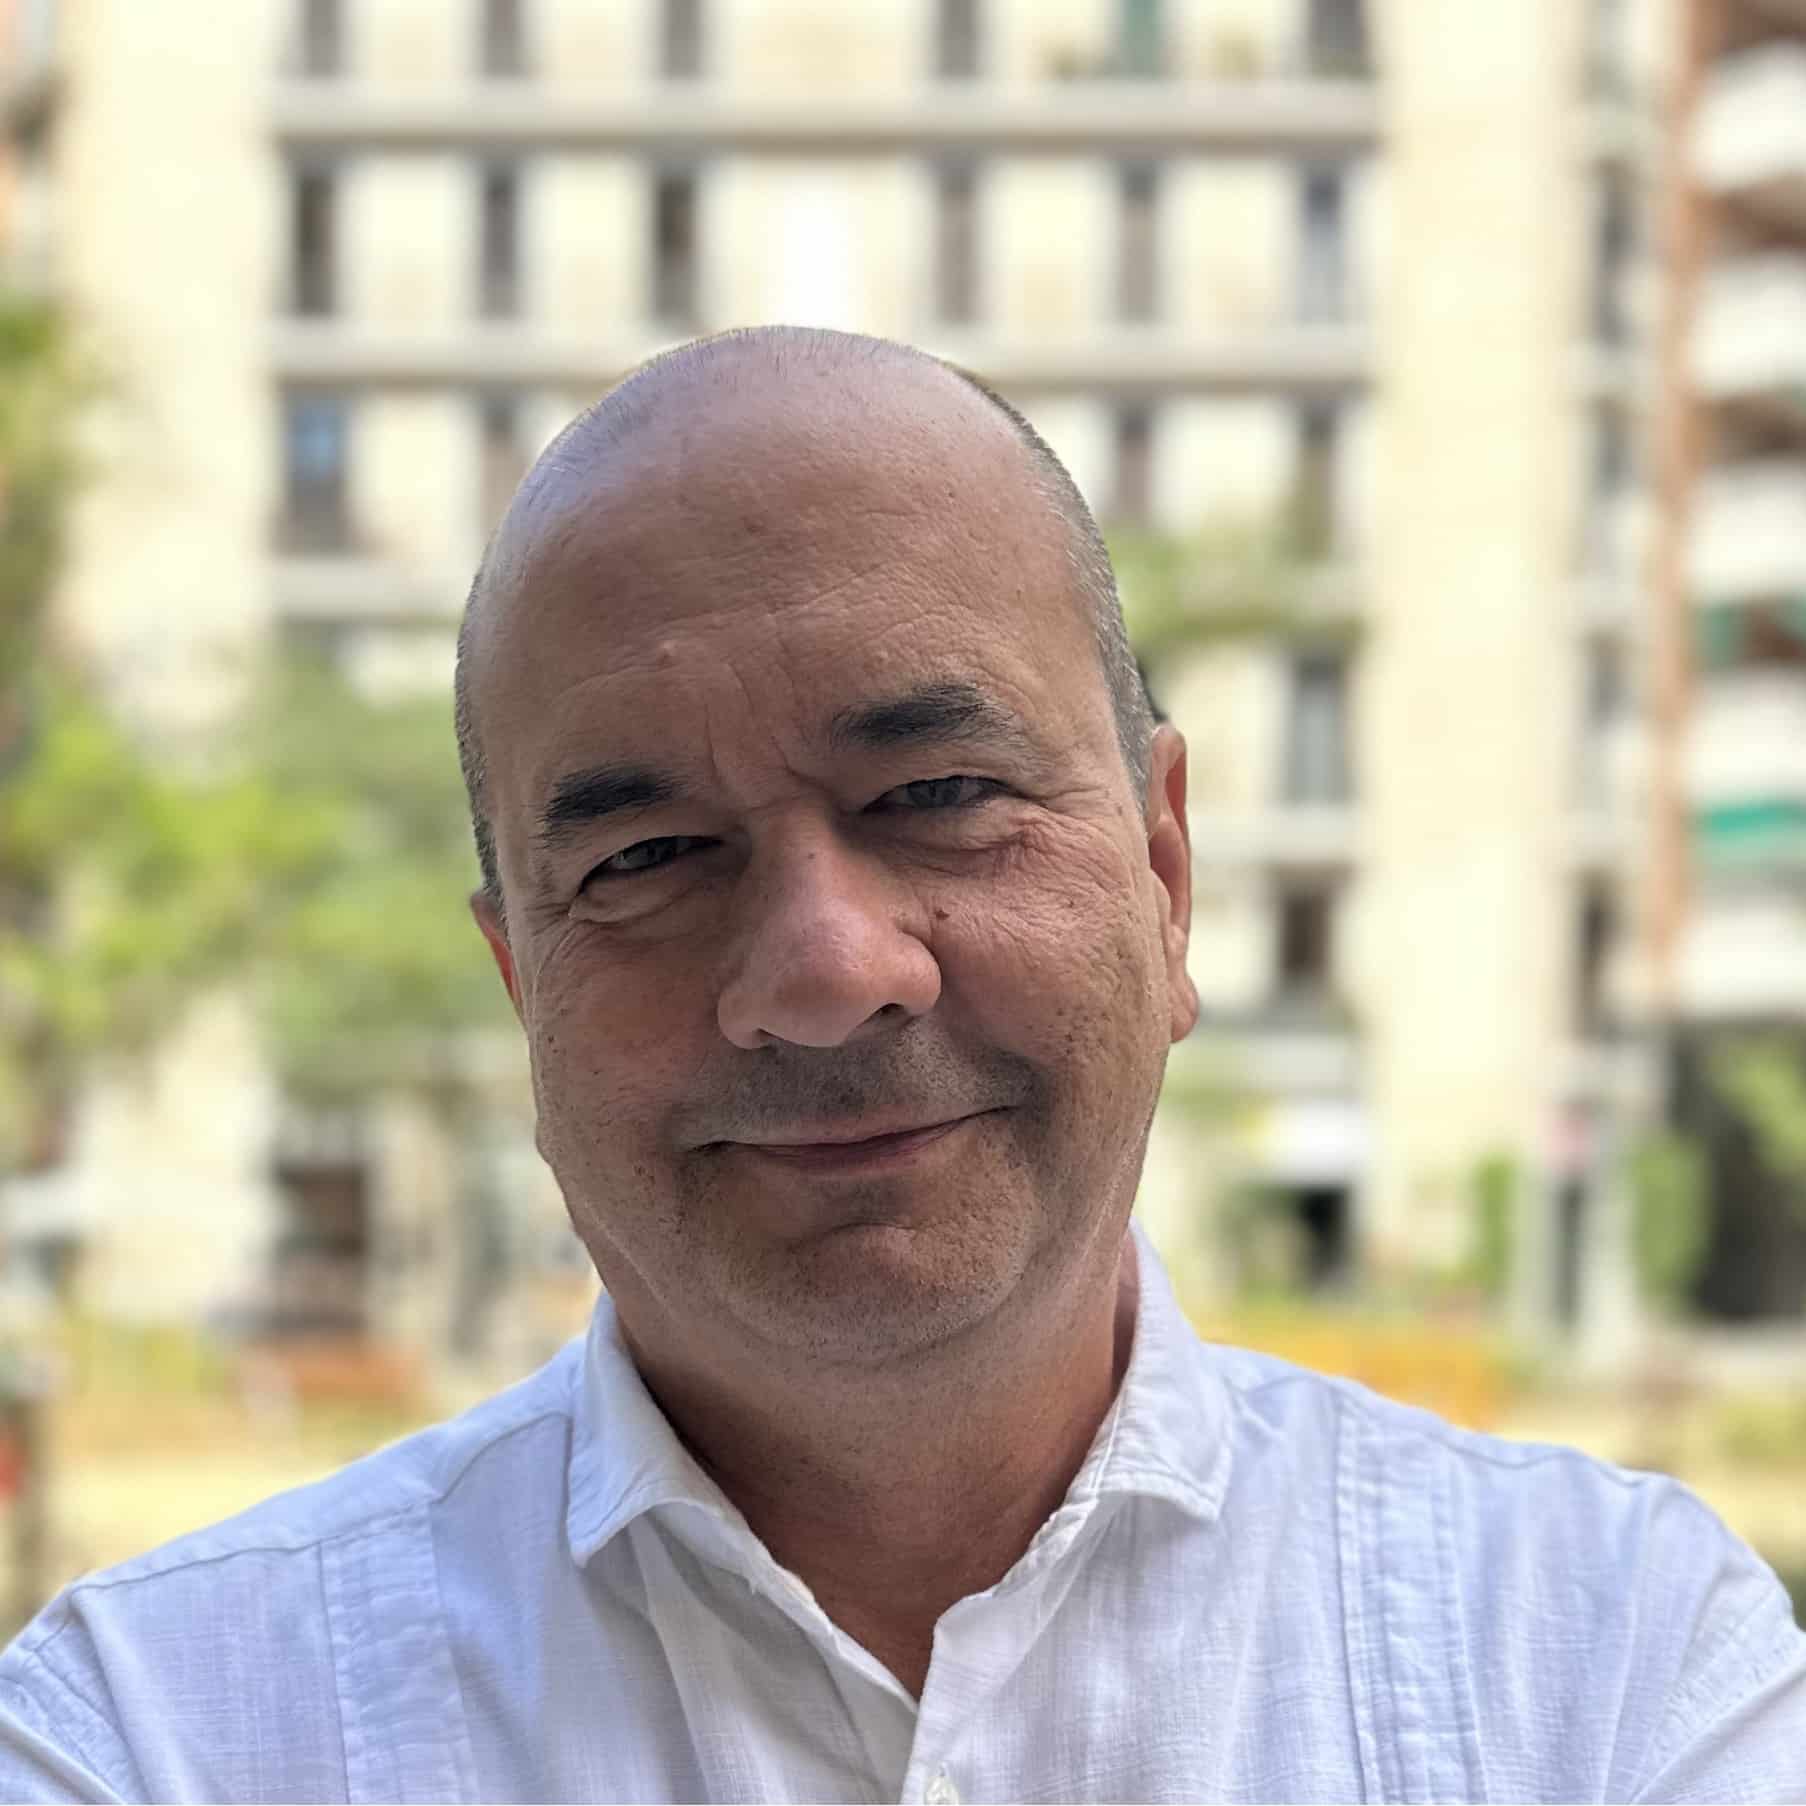 AleaSoft - Antonio Delgado Rigal CEO